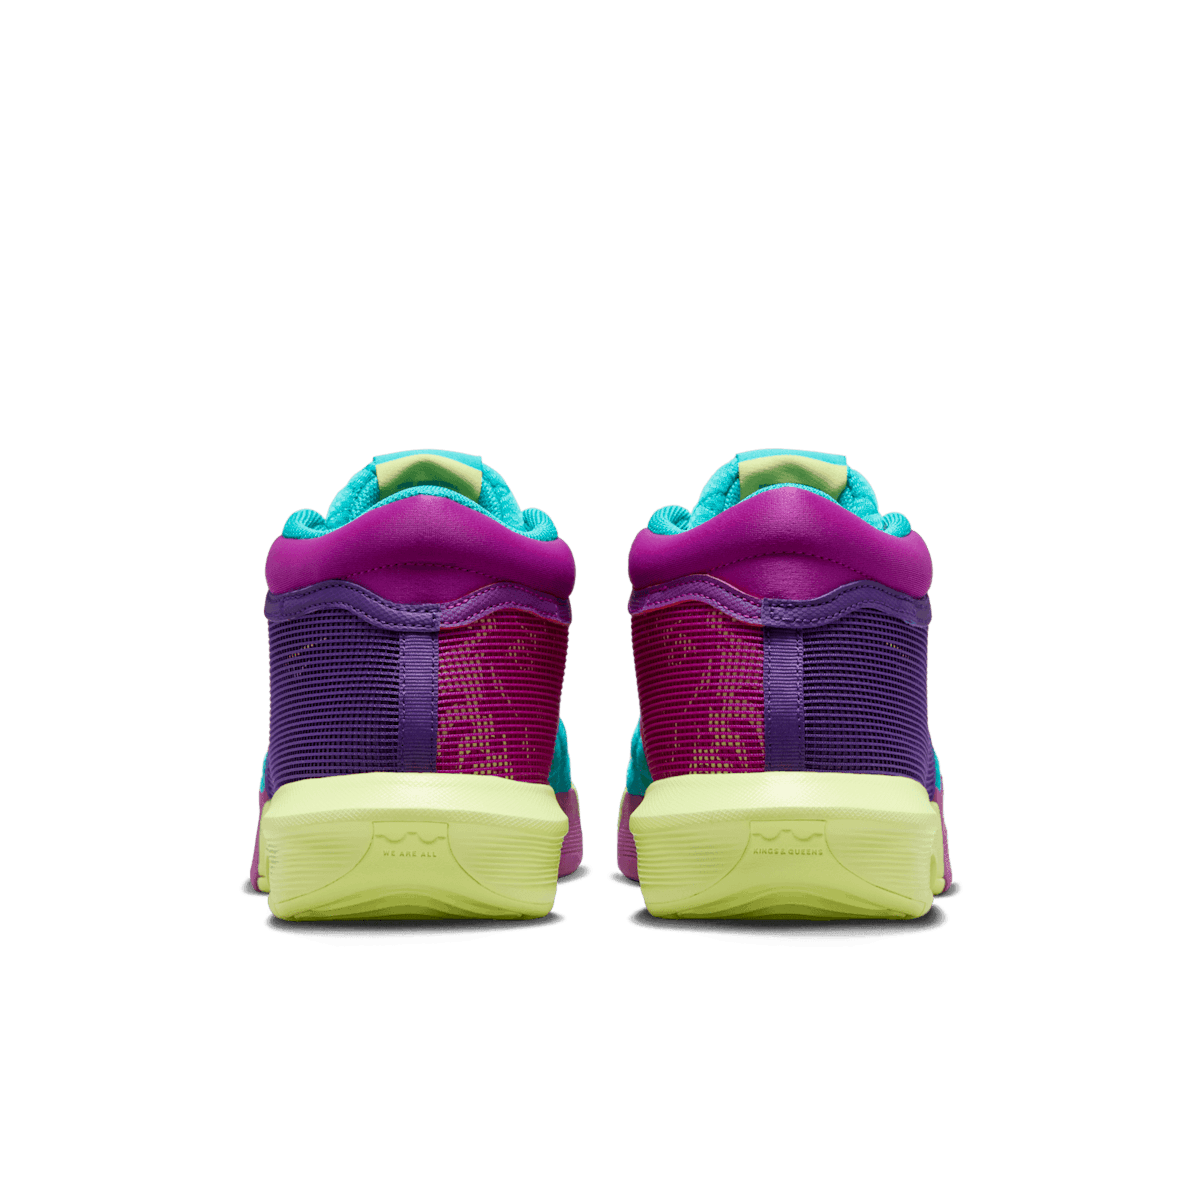 Nike LeBron Witness 8 Field Purple Angle 3